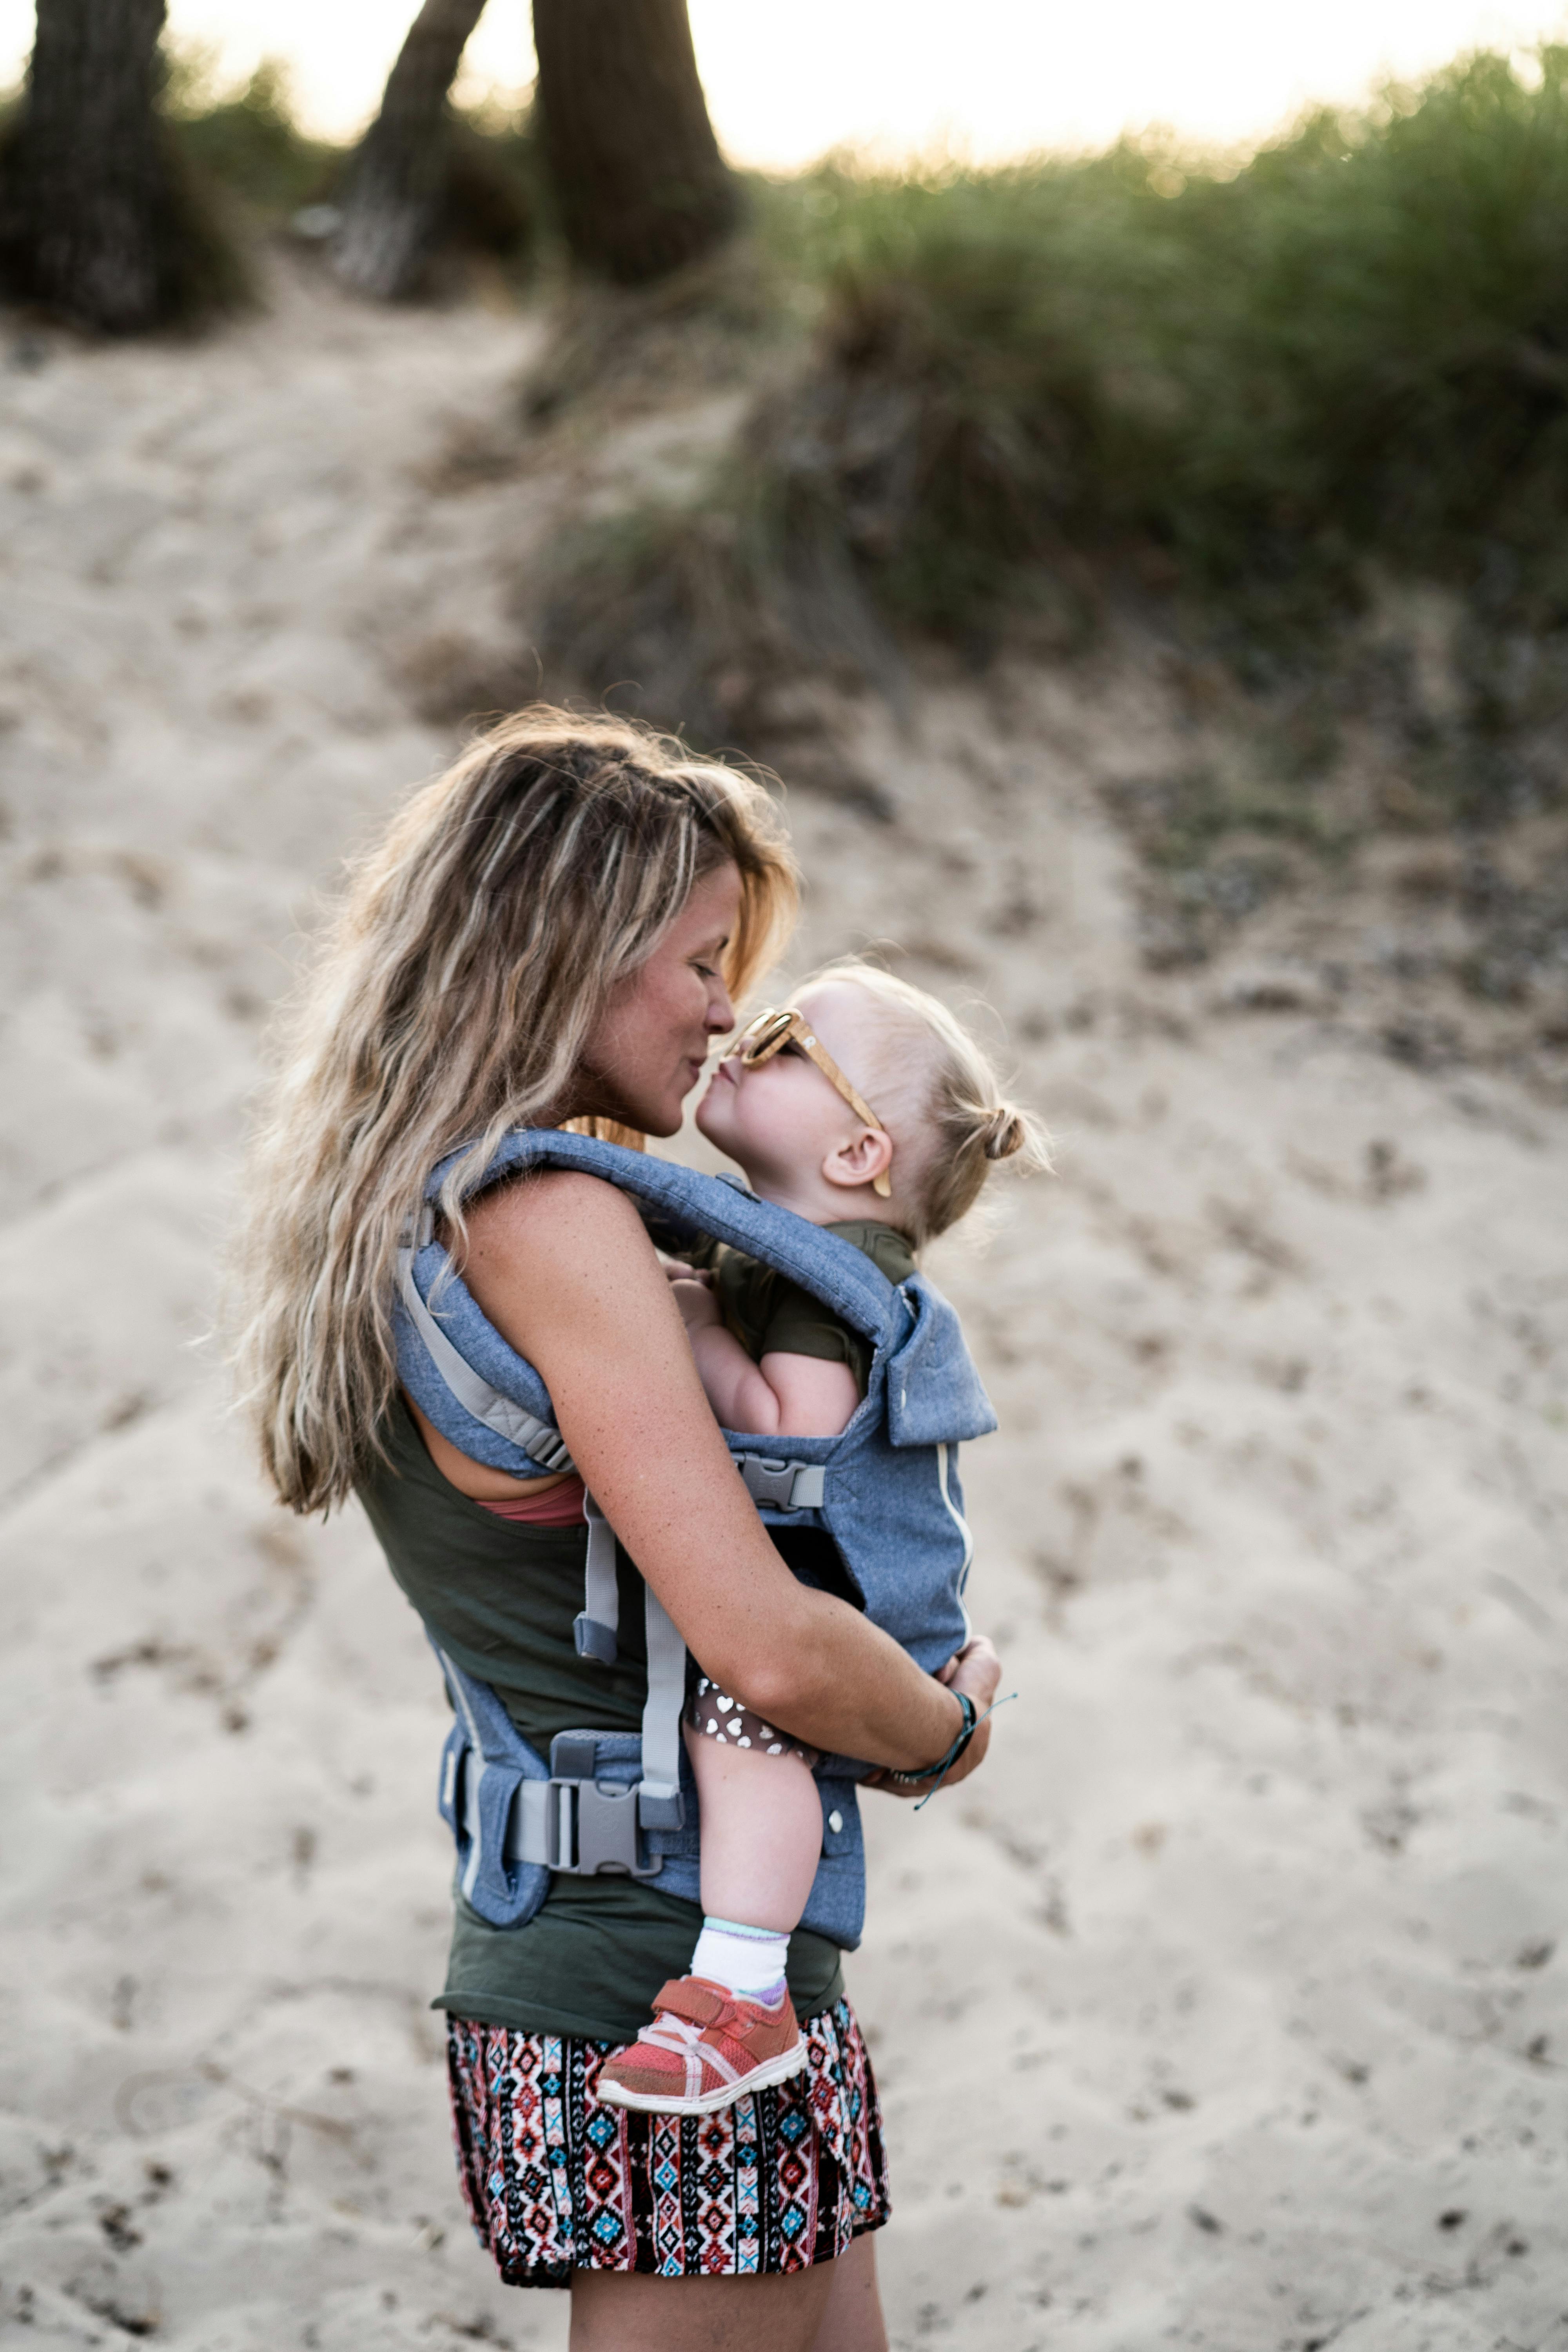 Eine Frau teilt einen Kuss mit einem Kleinkind am Strand | Quelle: Pexels